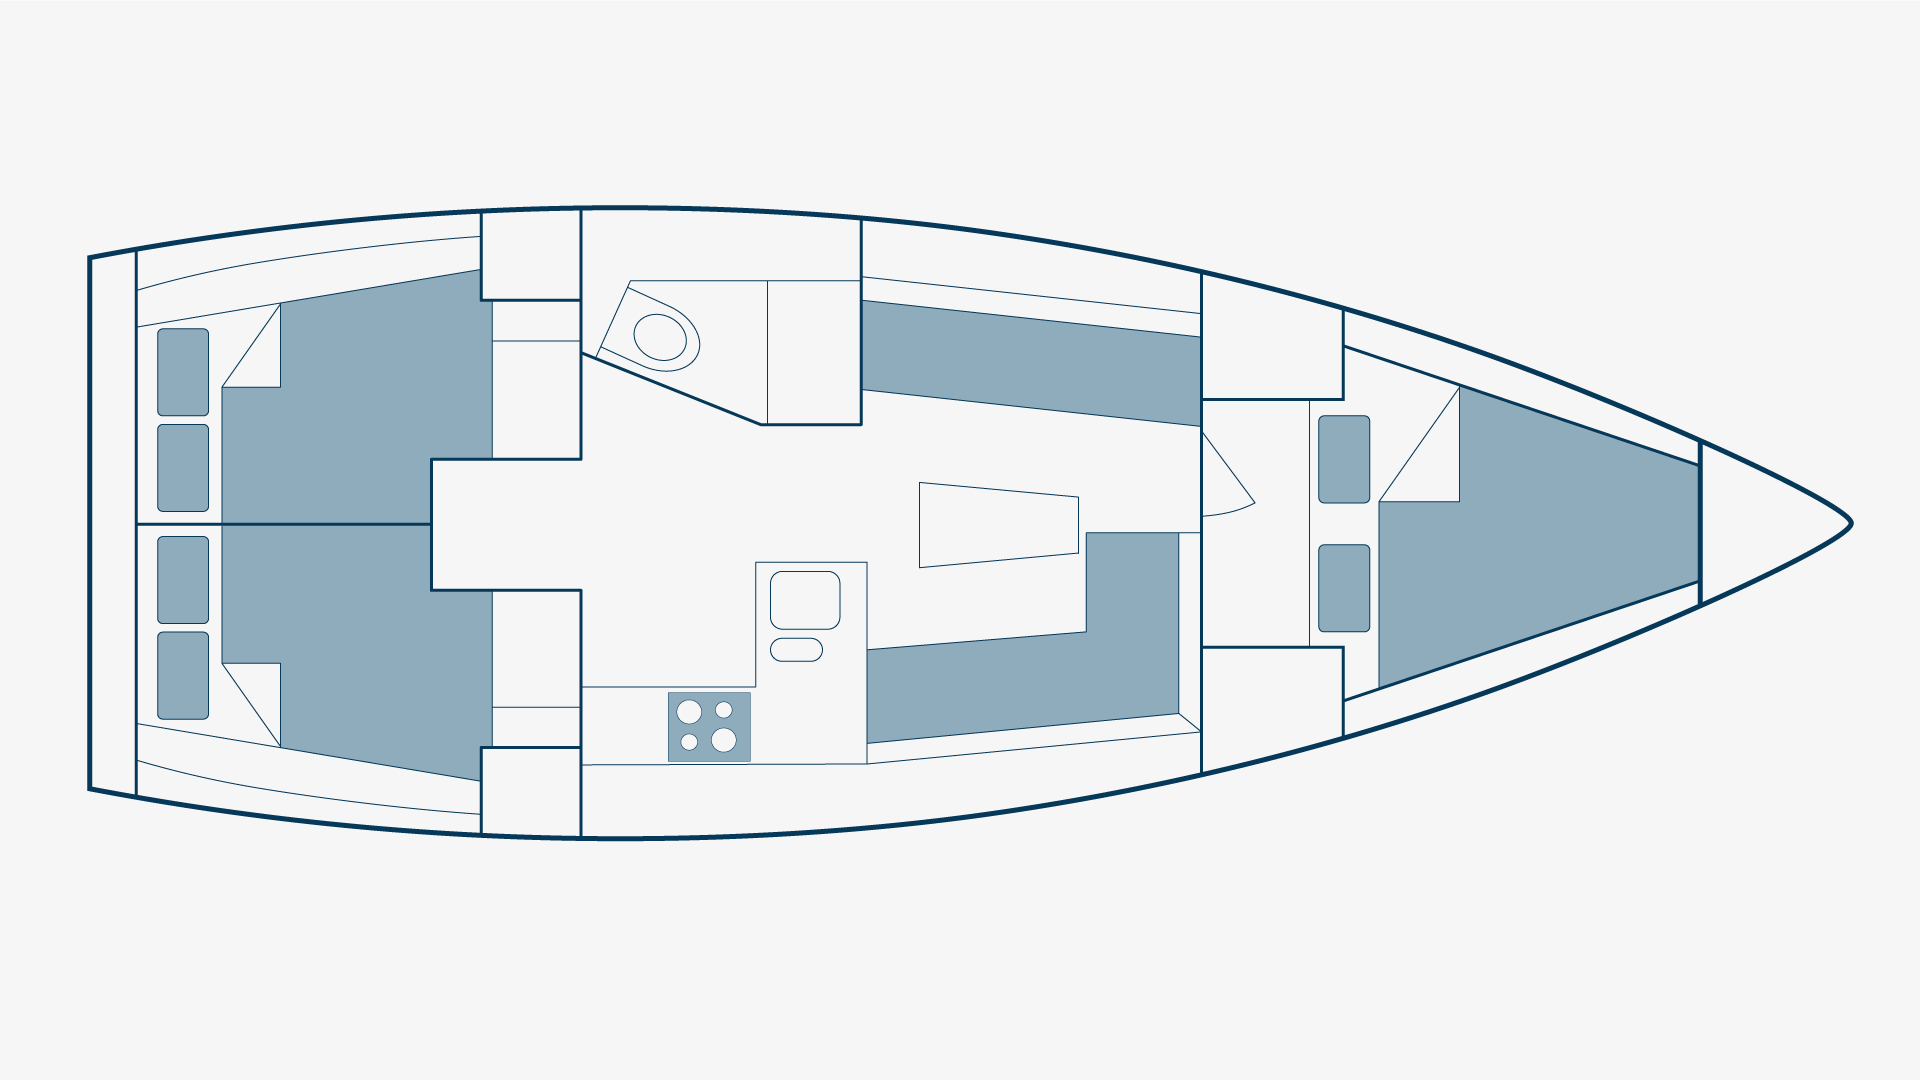 Bavaria 37 Floorplan